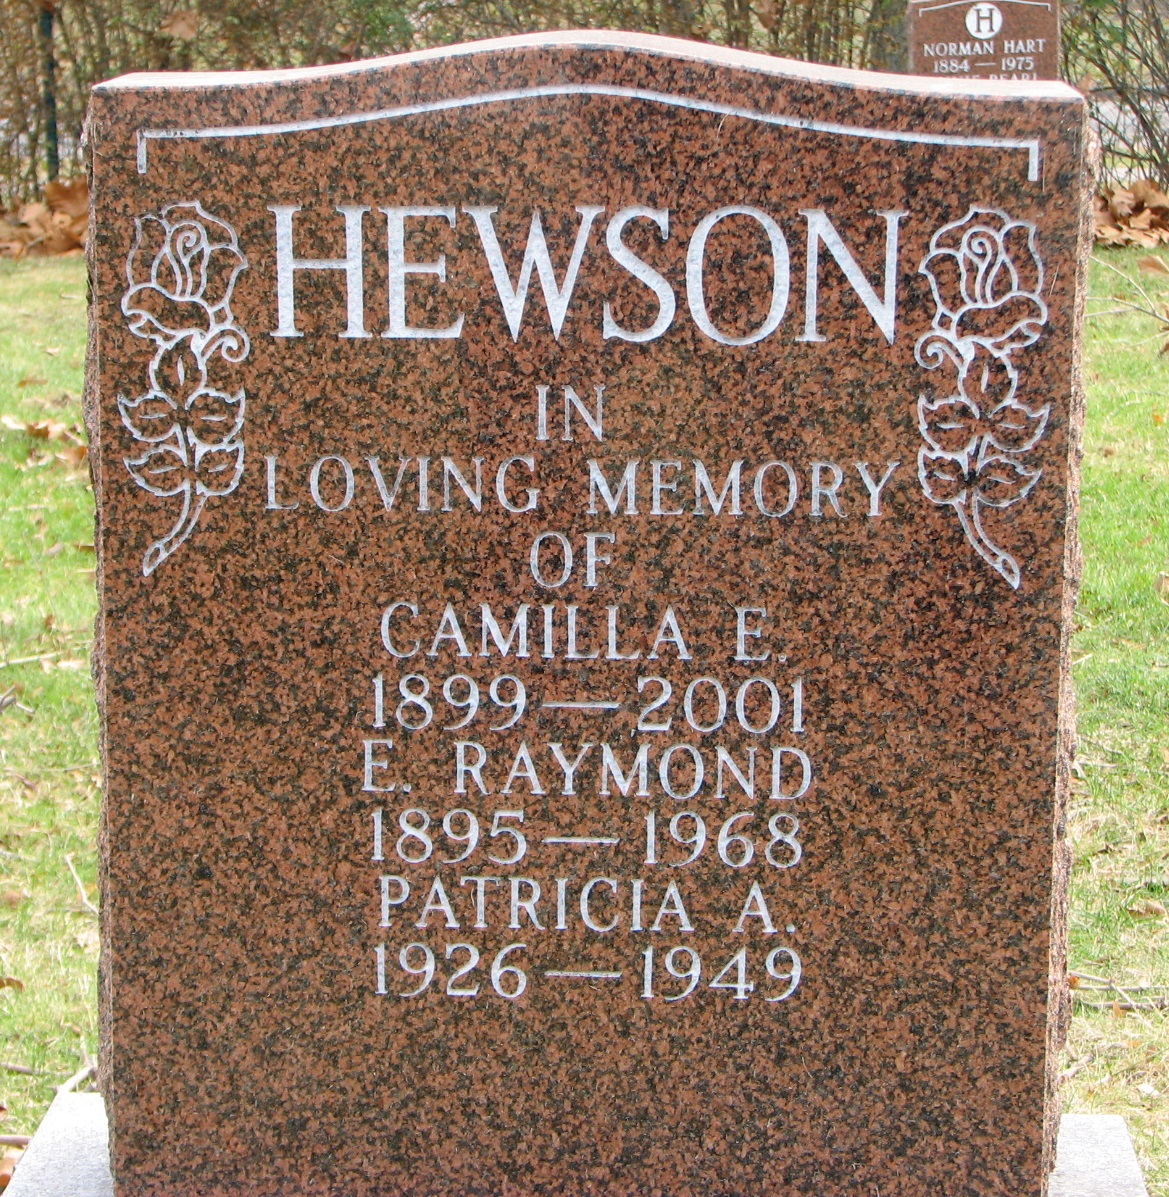 HEWSON-Camilla E.-1899-2001_E.Raymond-1895-1968_Patricia A.-1926-1949